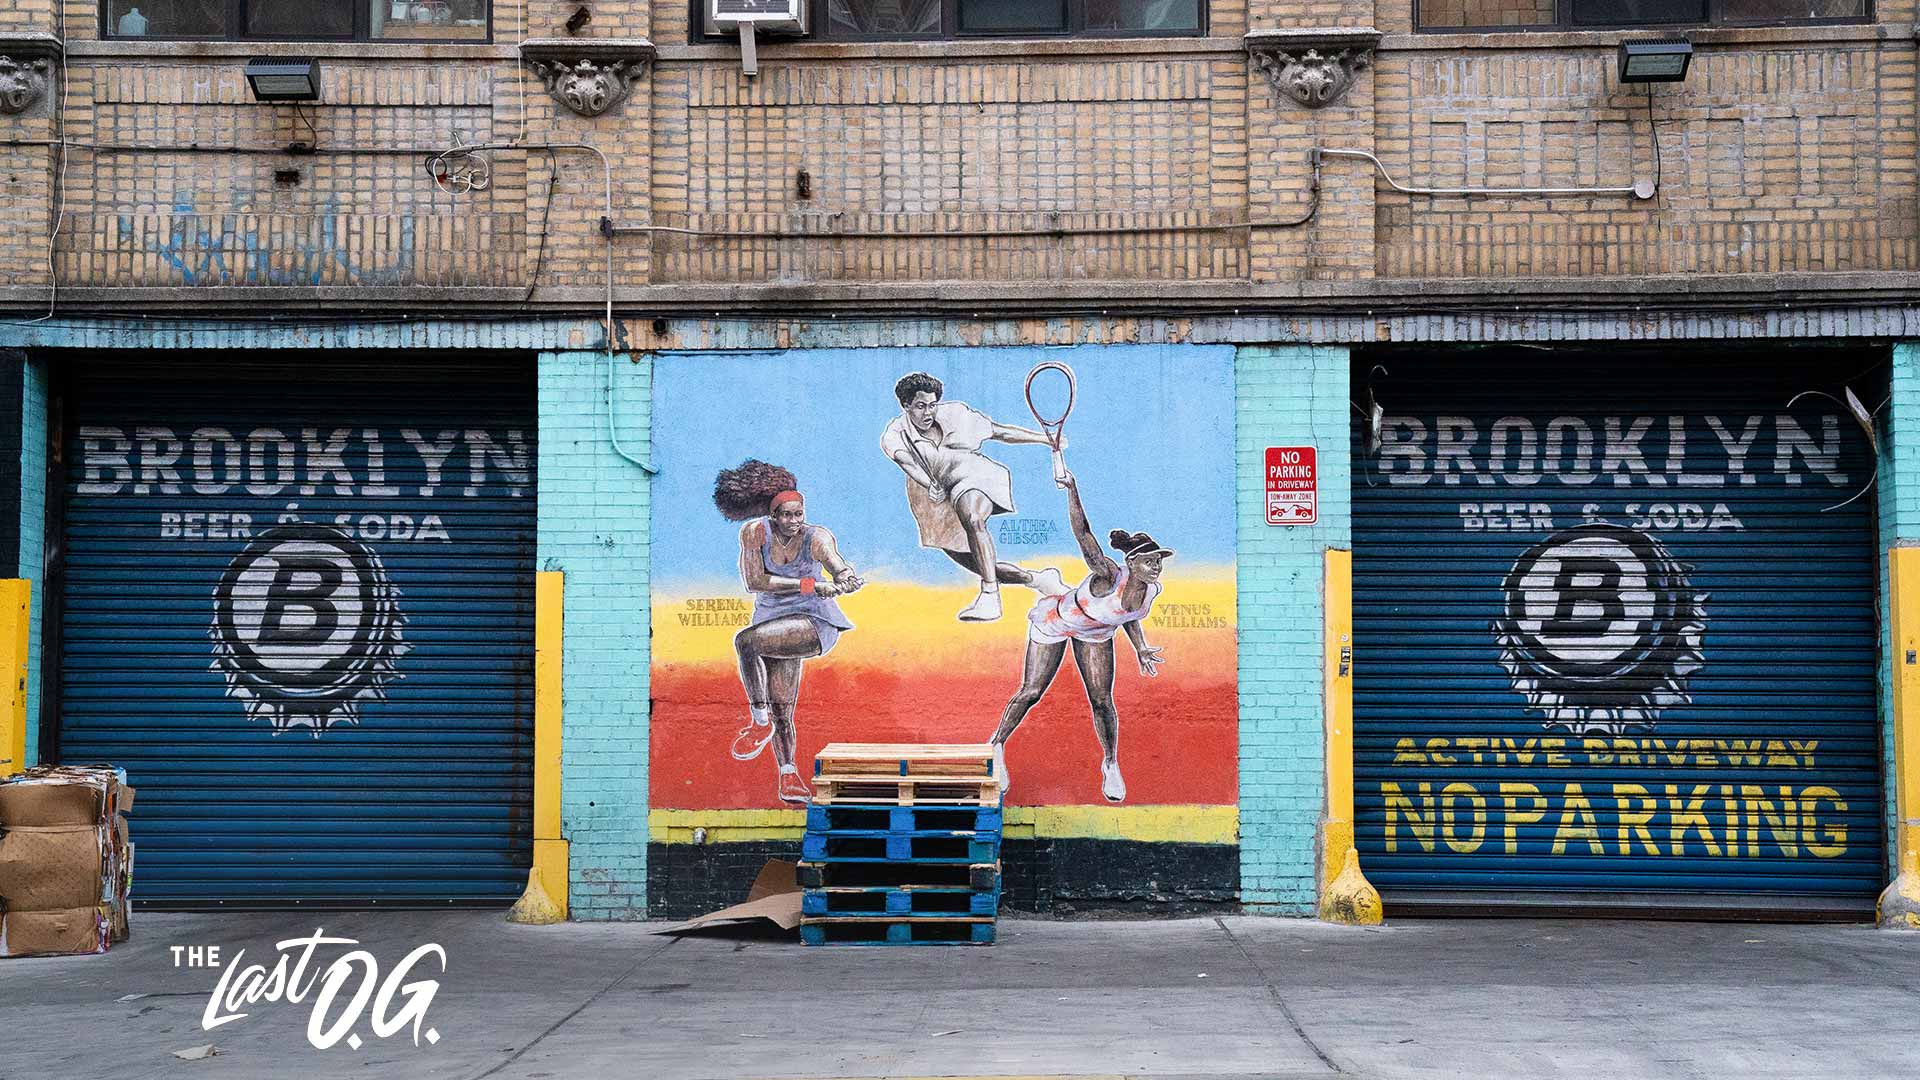 The Last O.G. Brooklyn background